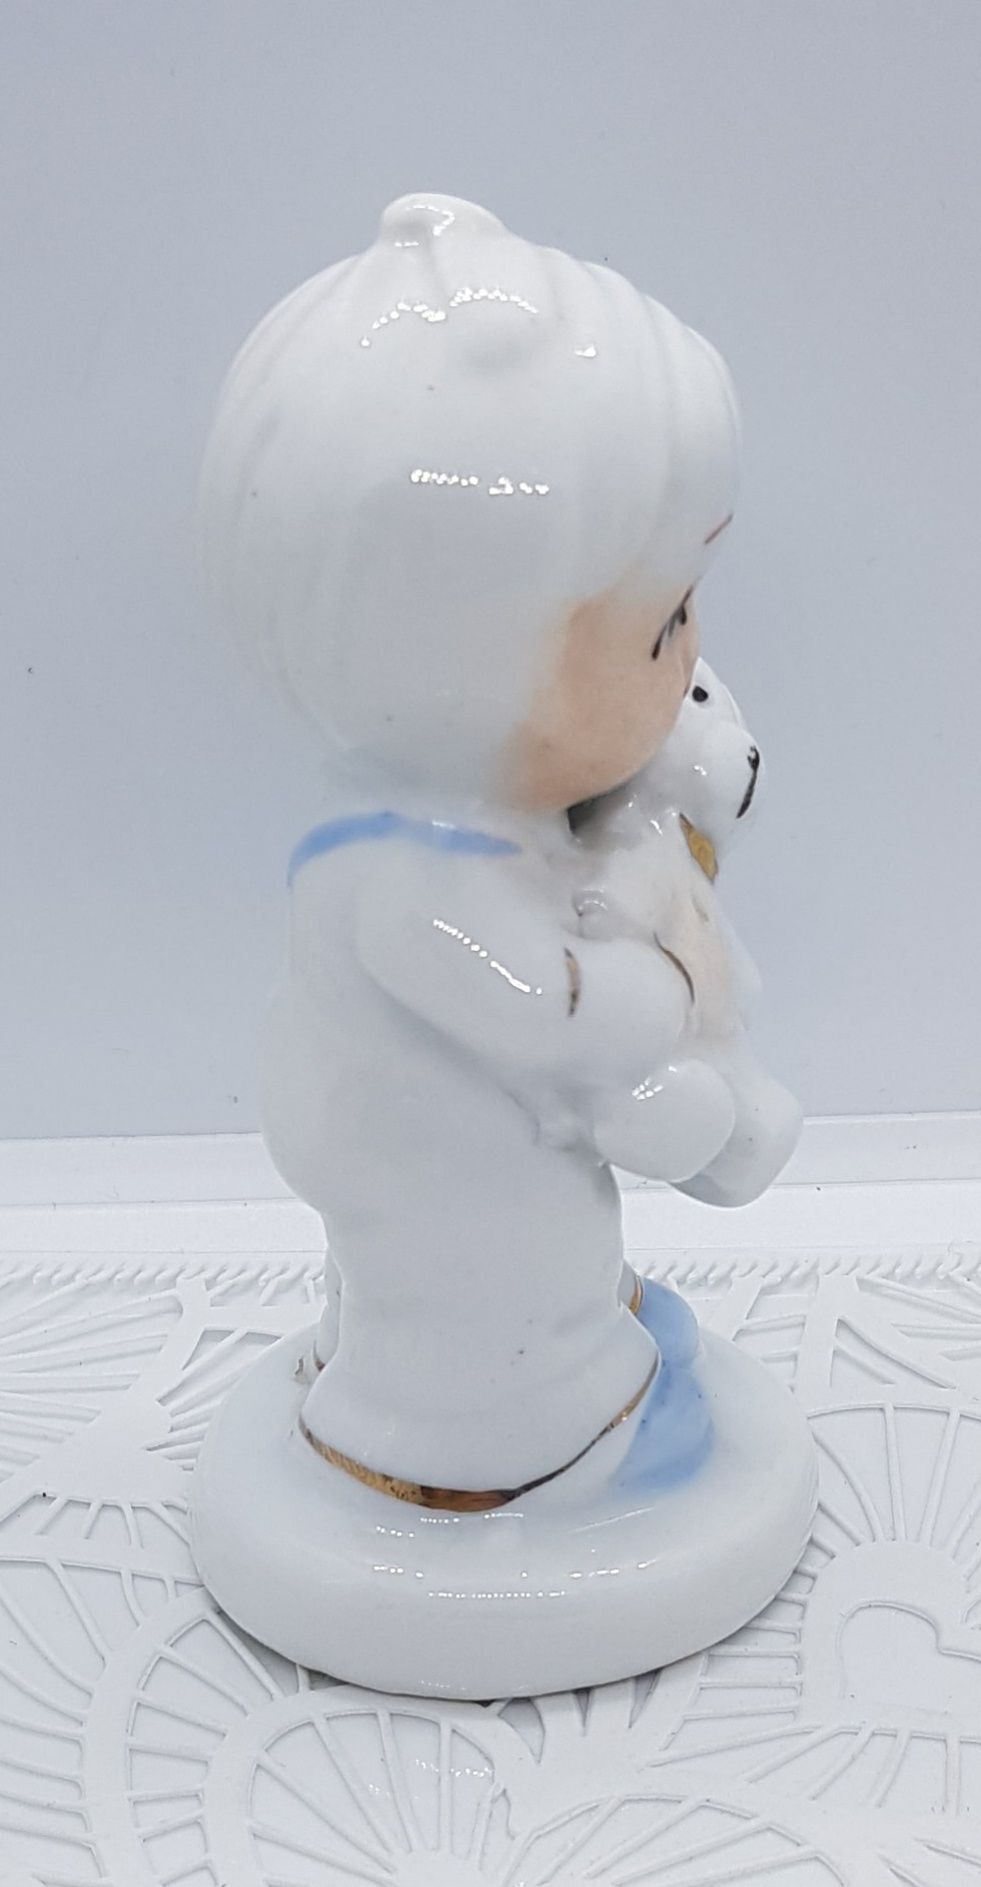 Chłopiec chłopczyk z misiem unikatowa biała figurka unikat miś misio